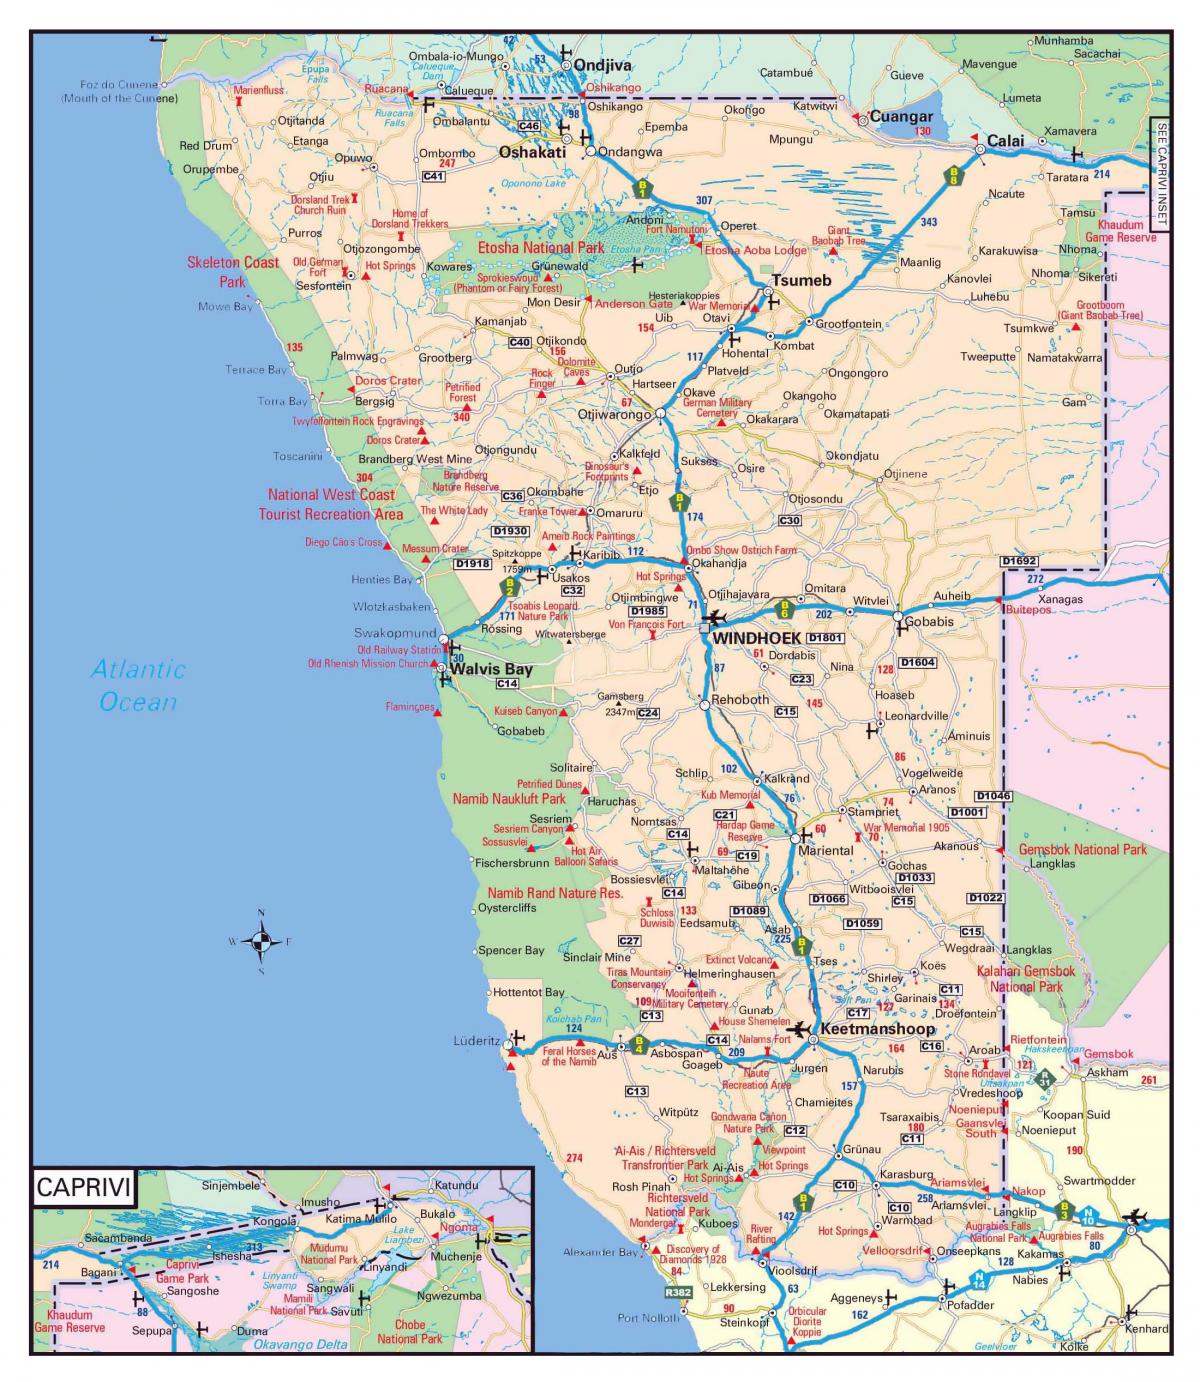 ნამიბიაში გზების რუკა